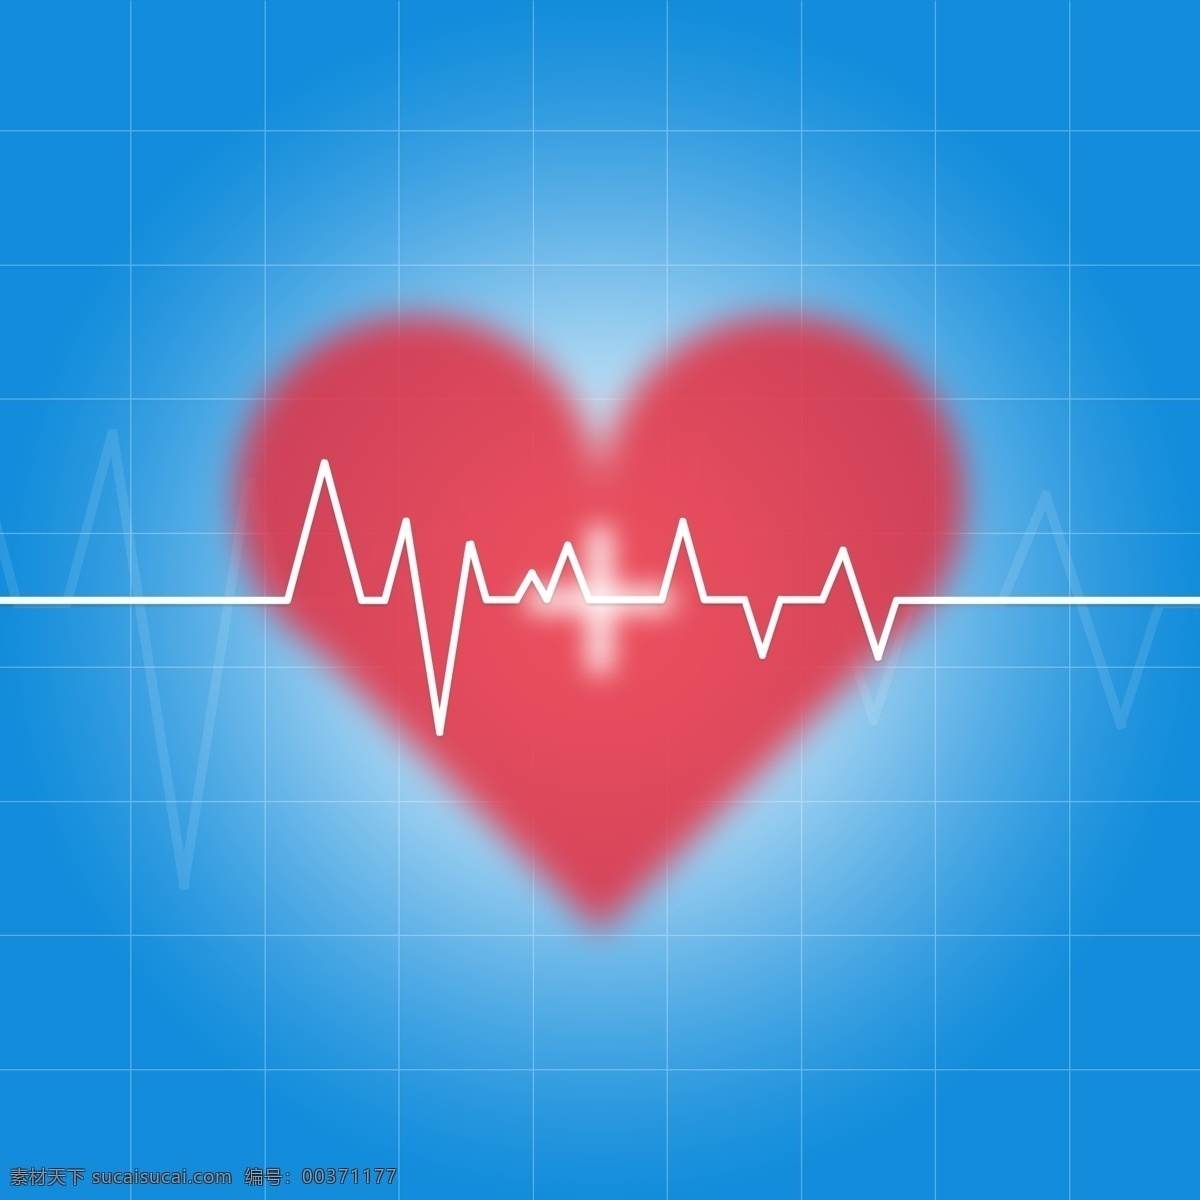 全 原创 蓝色 医疗 心性 心电图 背景 健康 心形 心脏